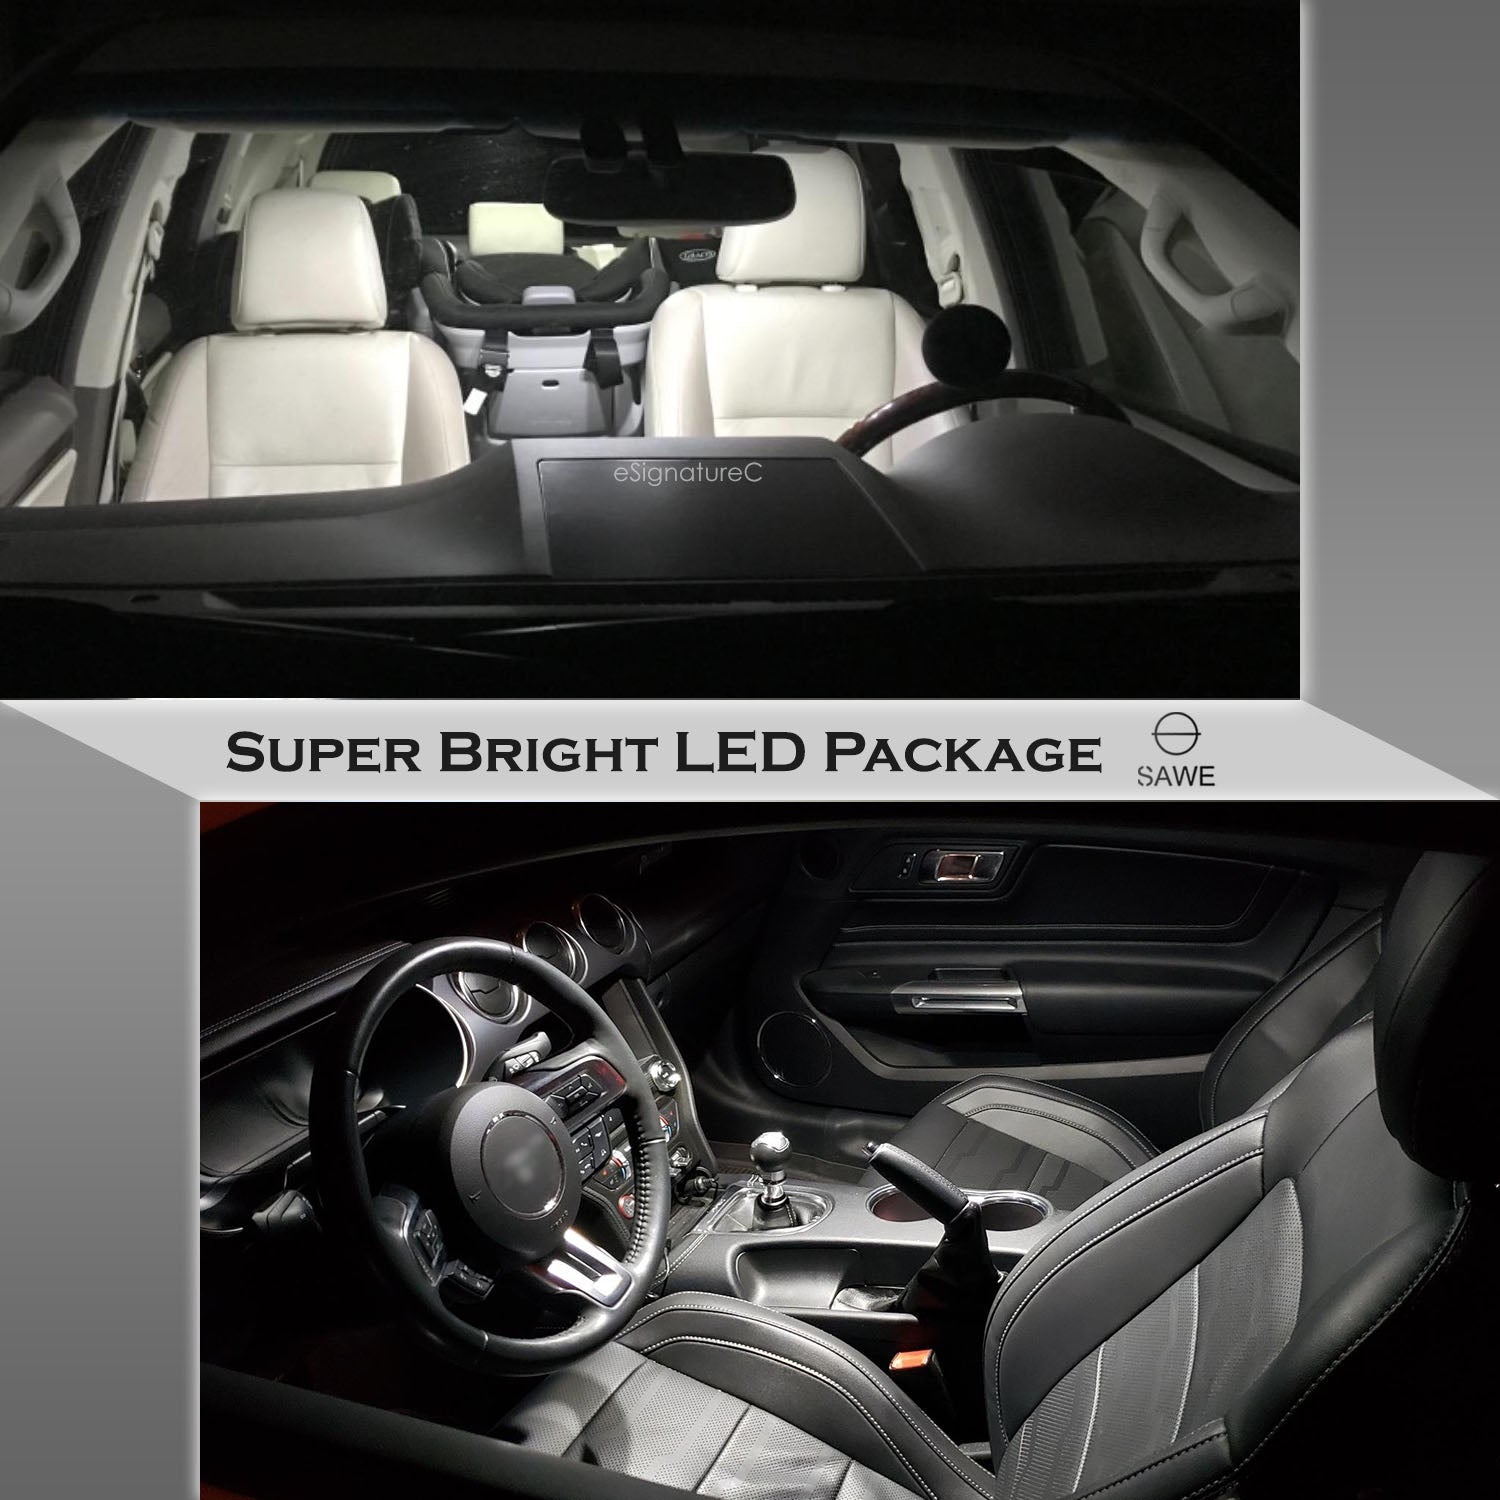 For Mercedes Benz E350 E550 E63 Interior LED Lights - Dome & Map Light Bulb Package Kit for 2010 - 2013 - White